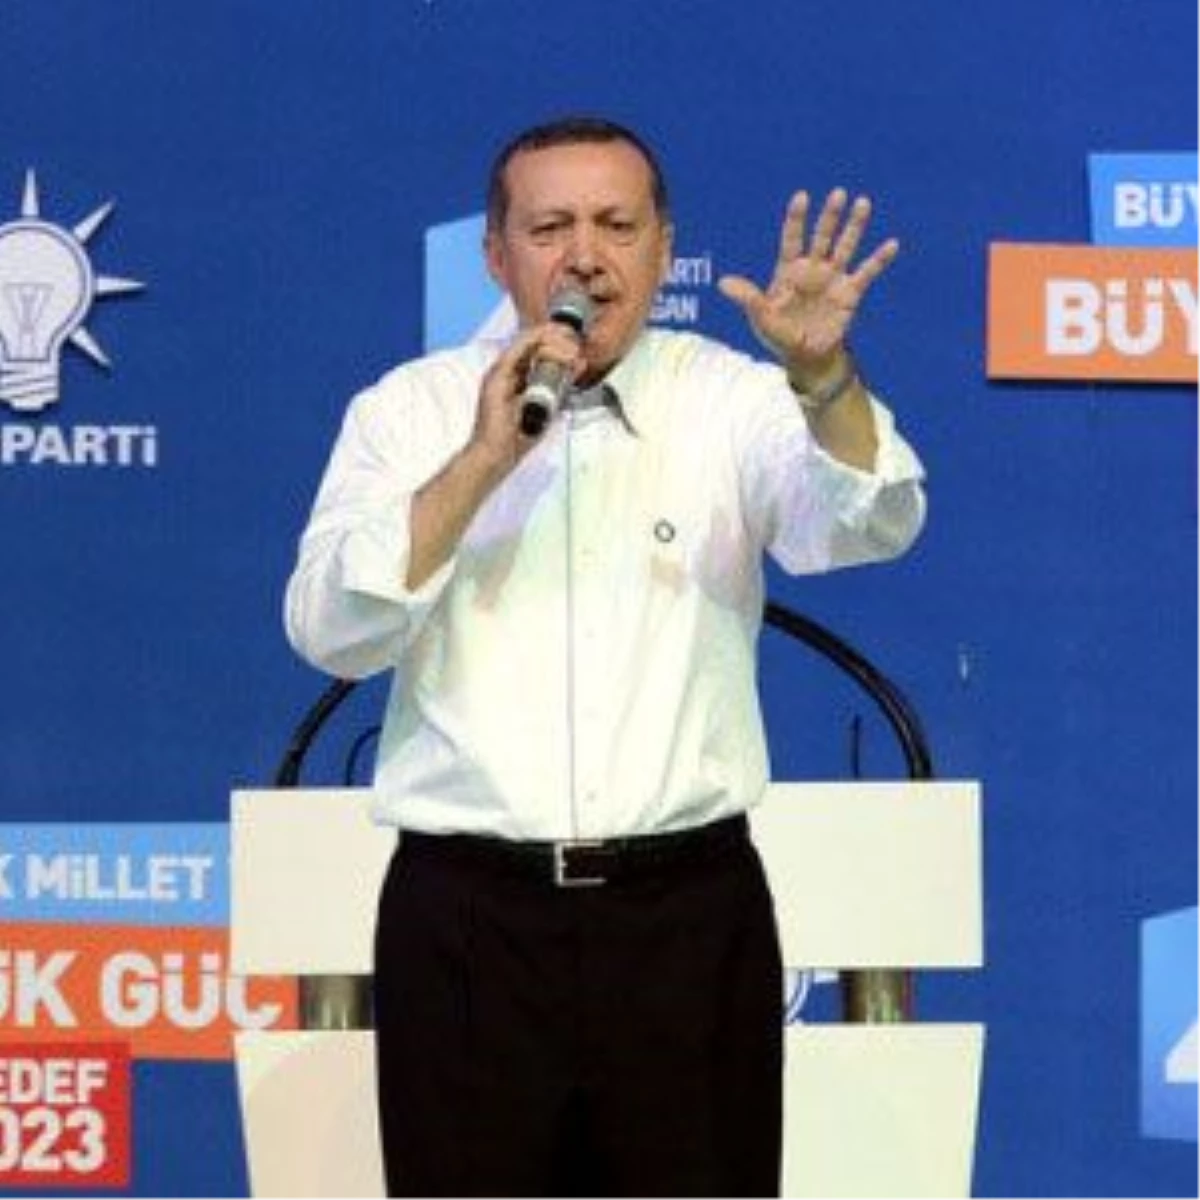 Başbakan Erdoğan (1): "Yeni Hedef 2071"